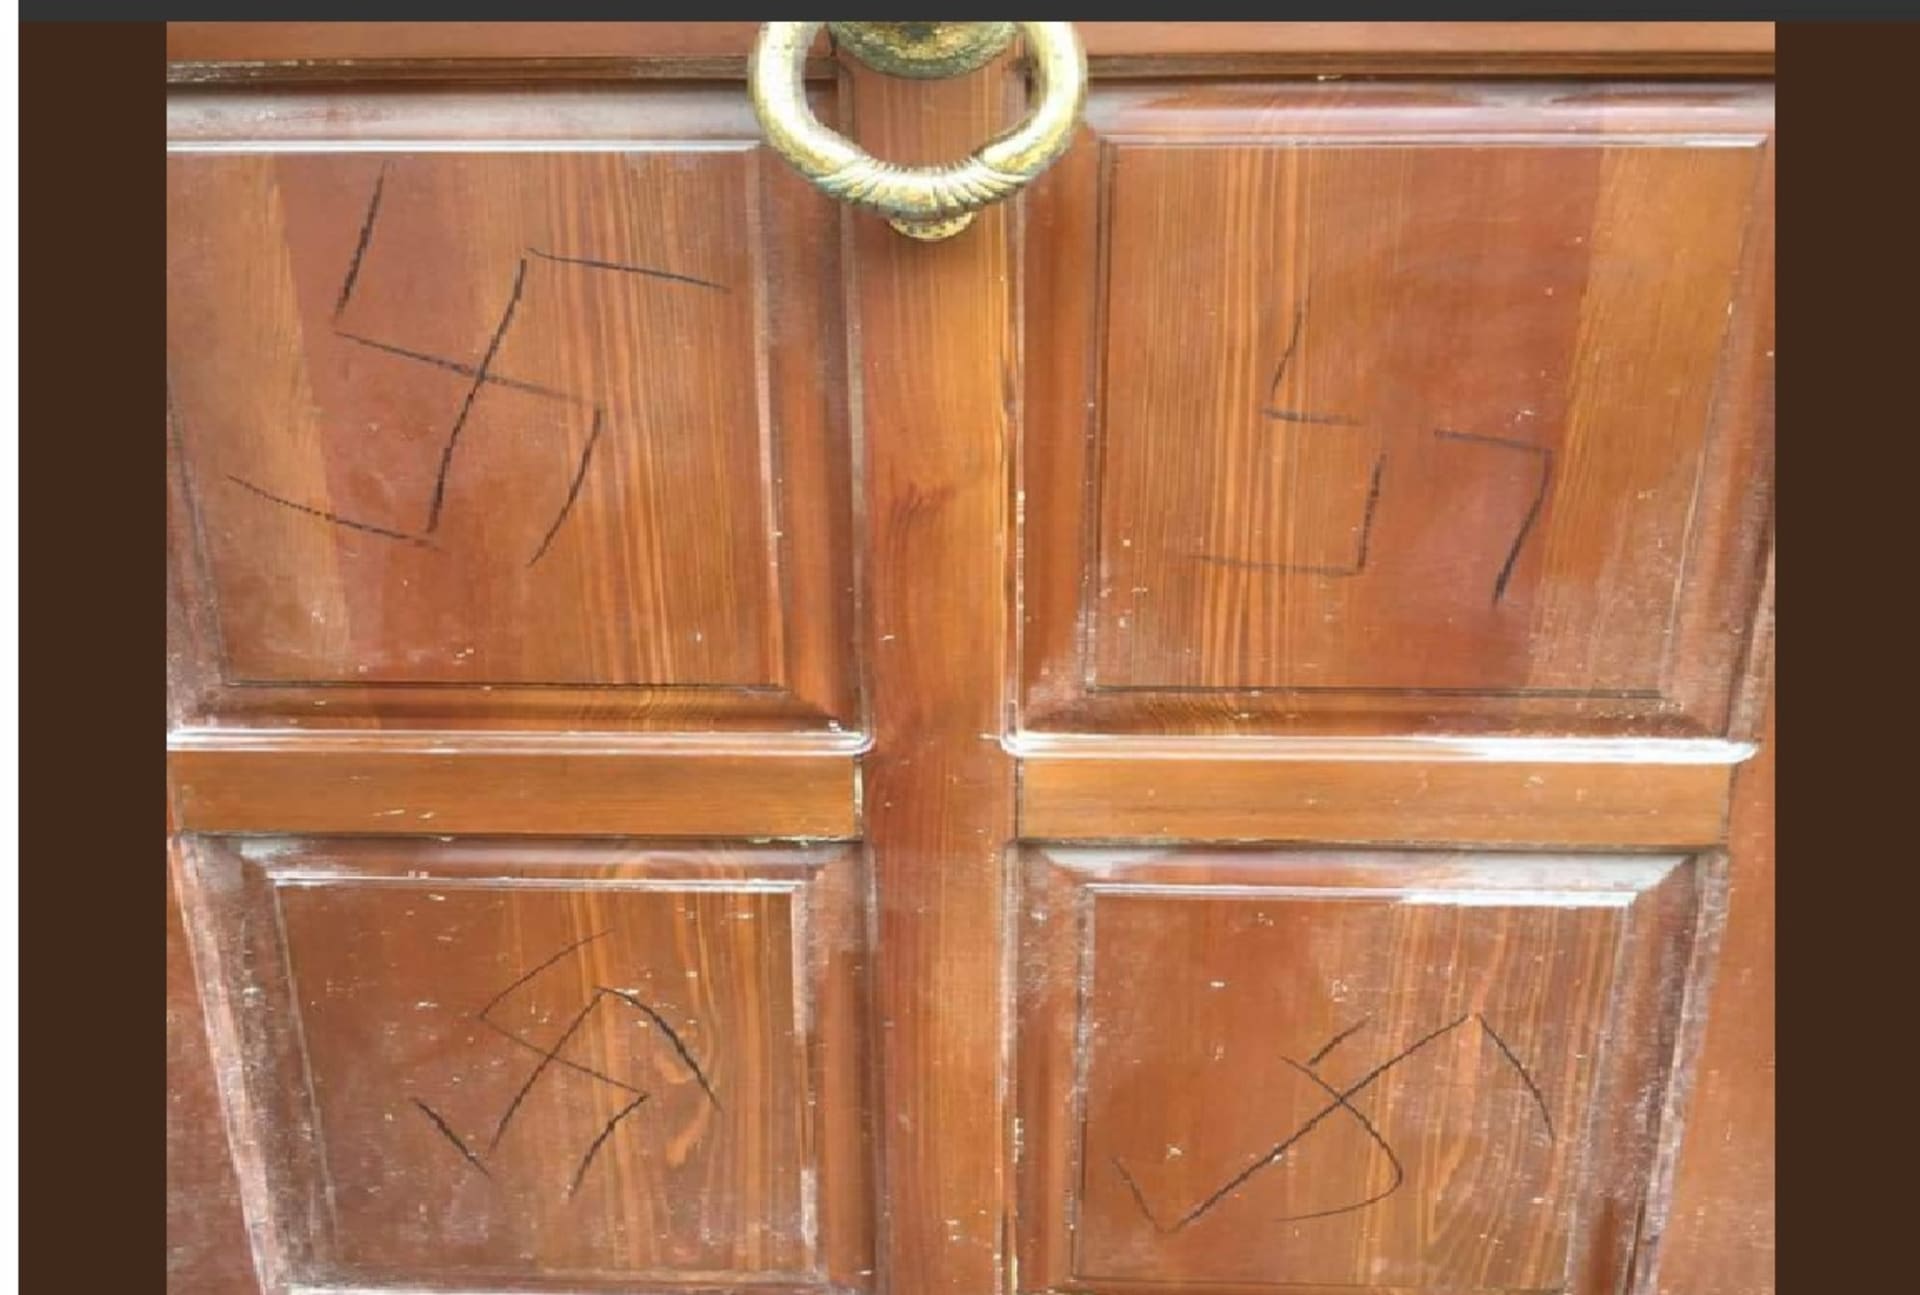 pomalované dveře Češky žijící v Zadaru foto twitter Jure Zubčić